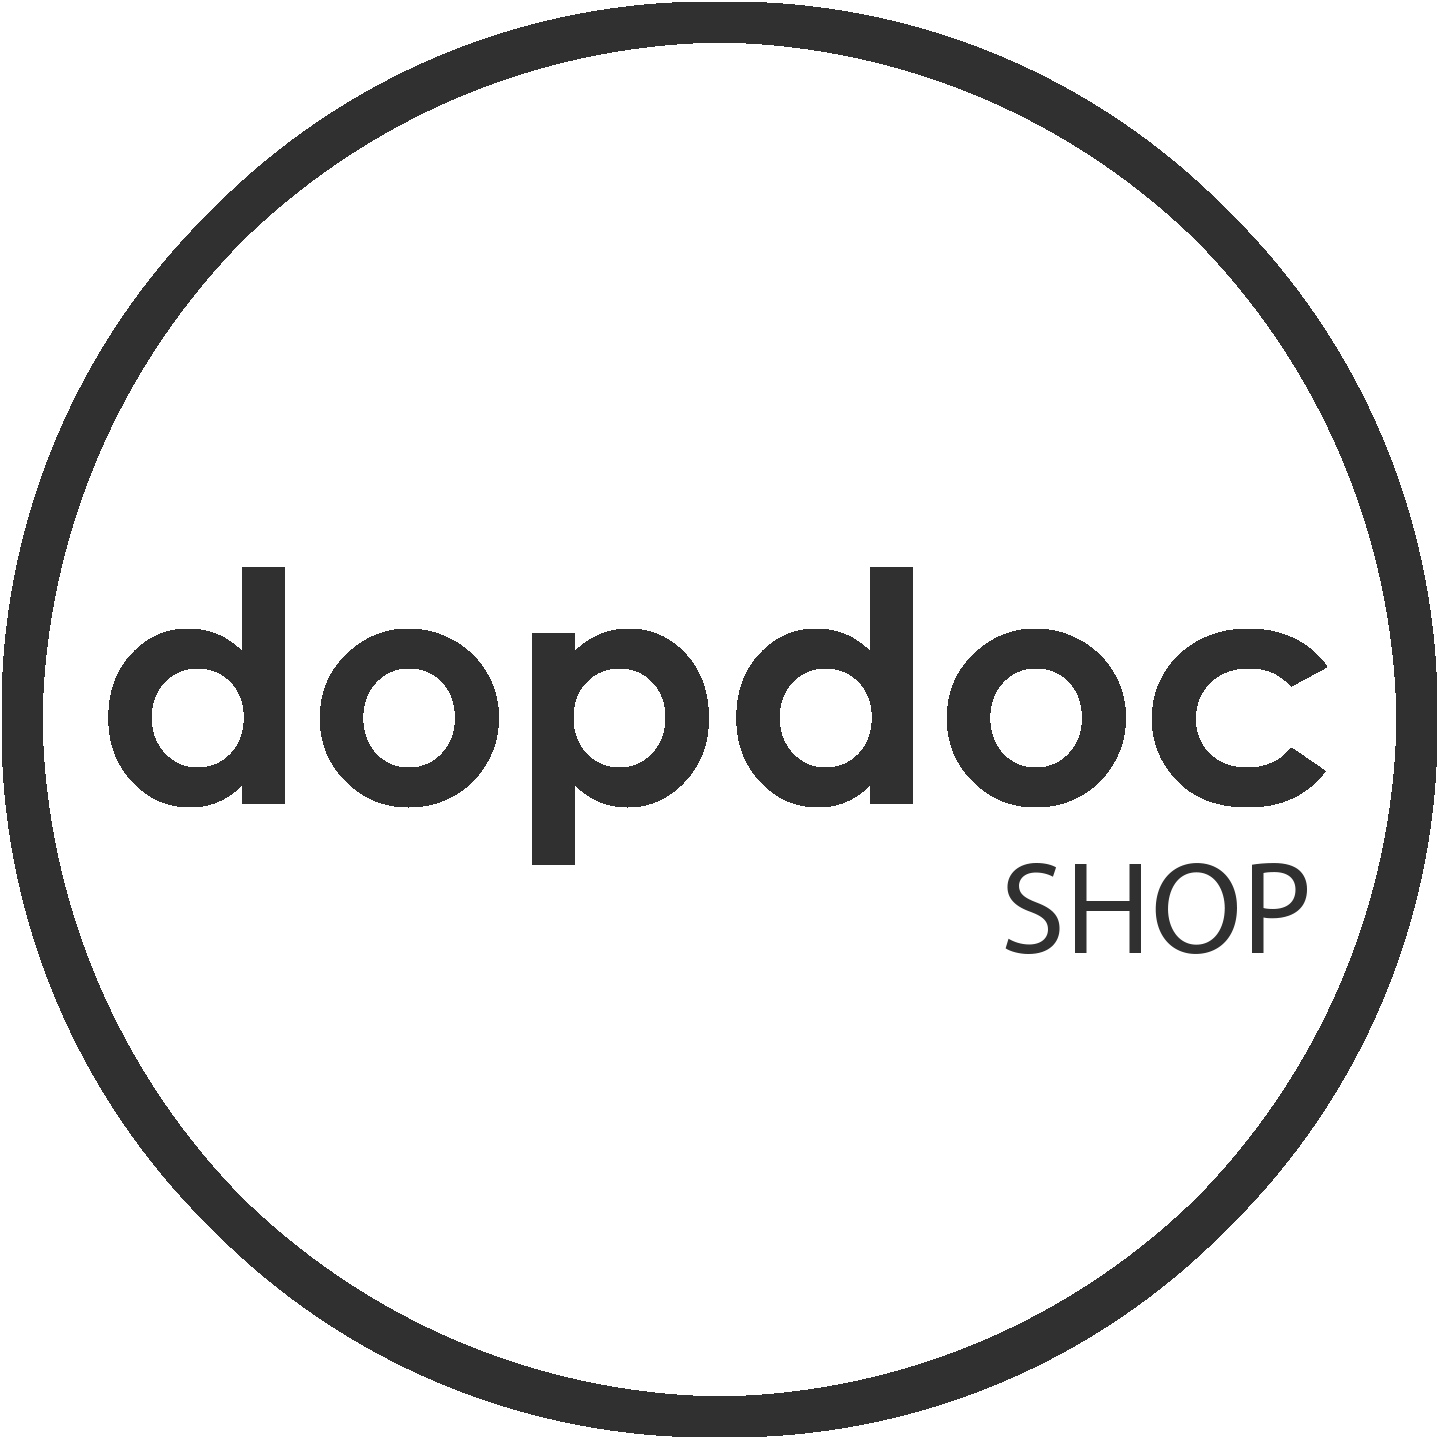 dopdoc Shop